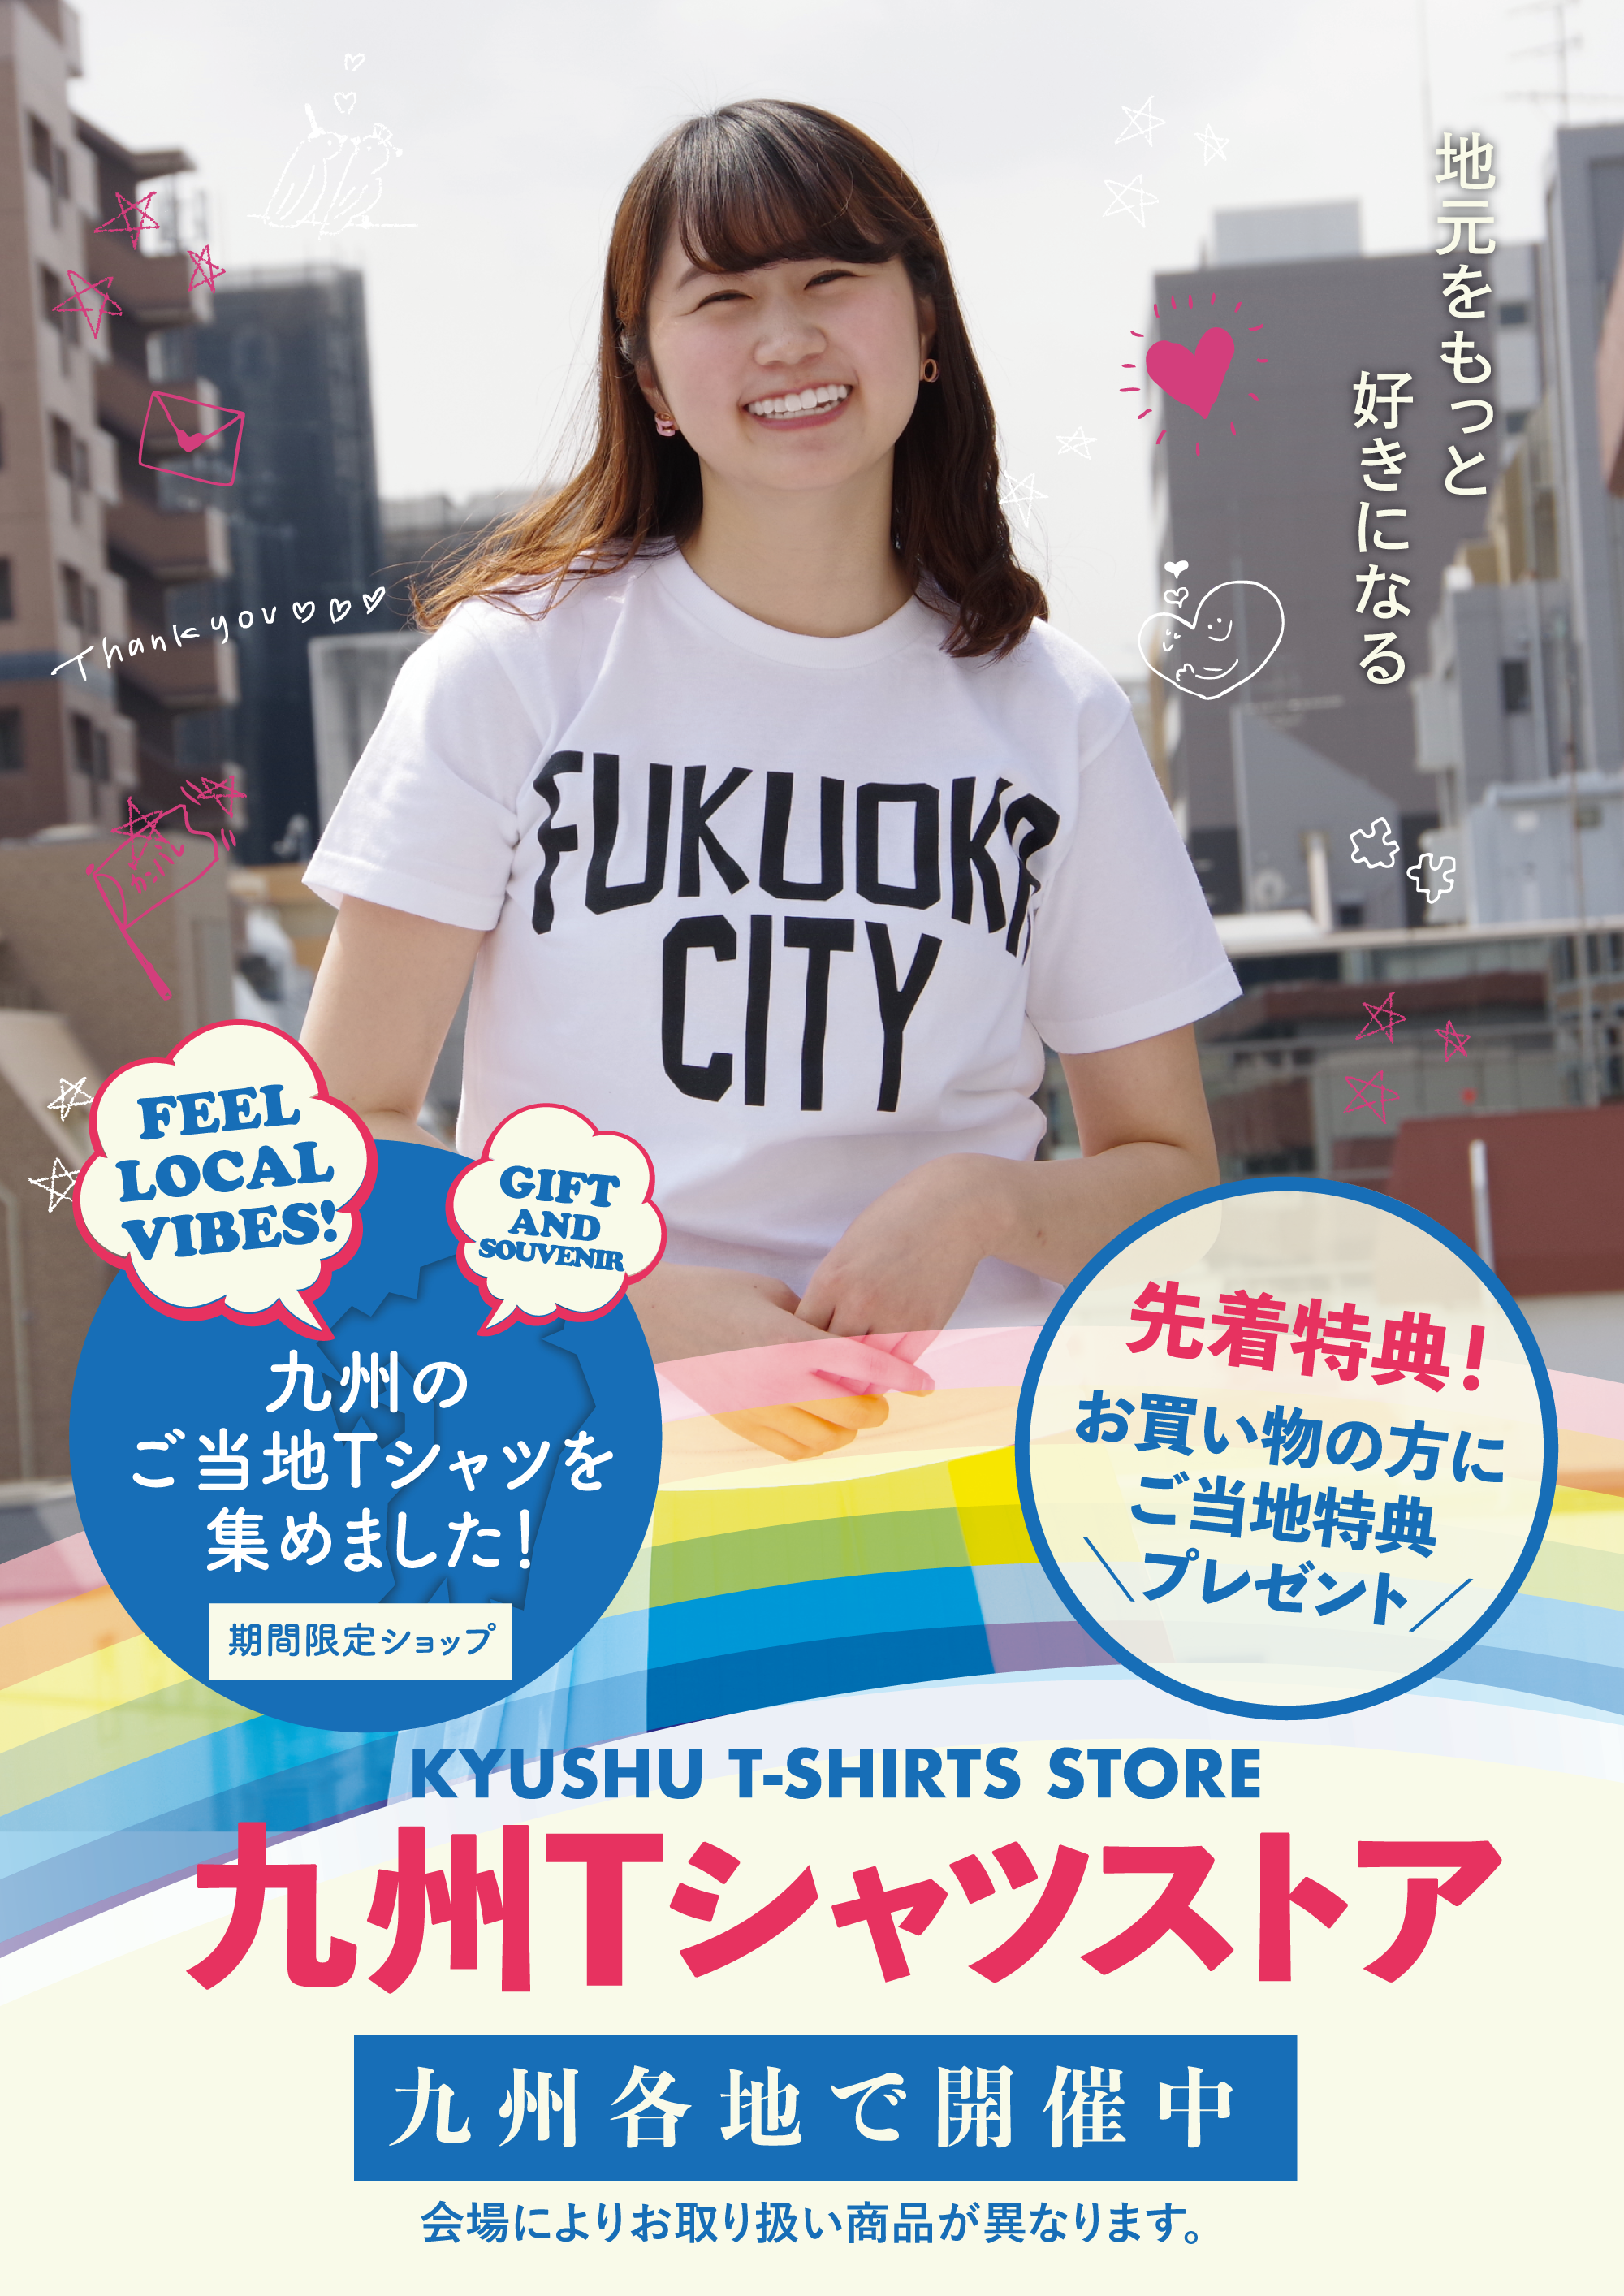 Kyushu T-shirt store